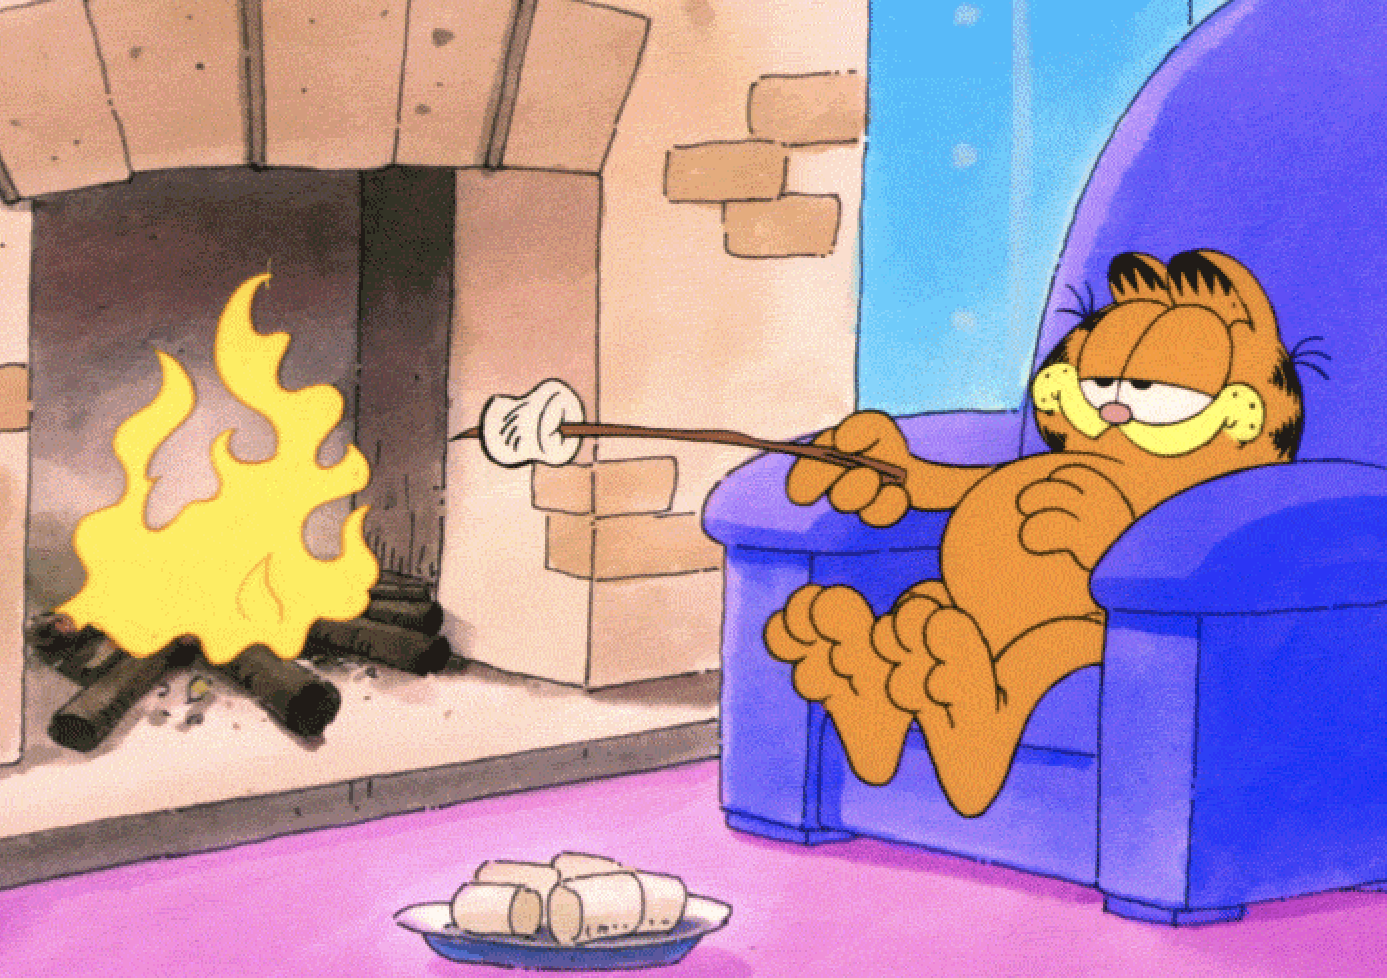 Garfield roasting marshmallows